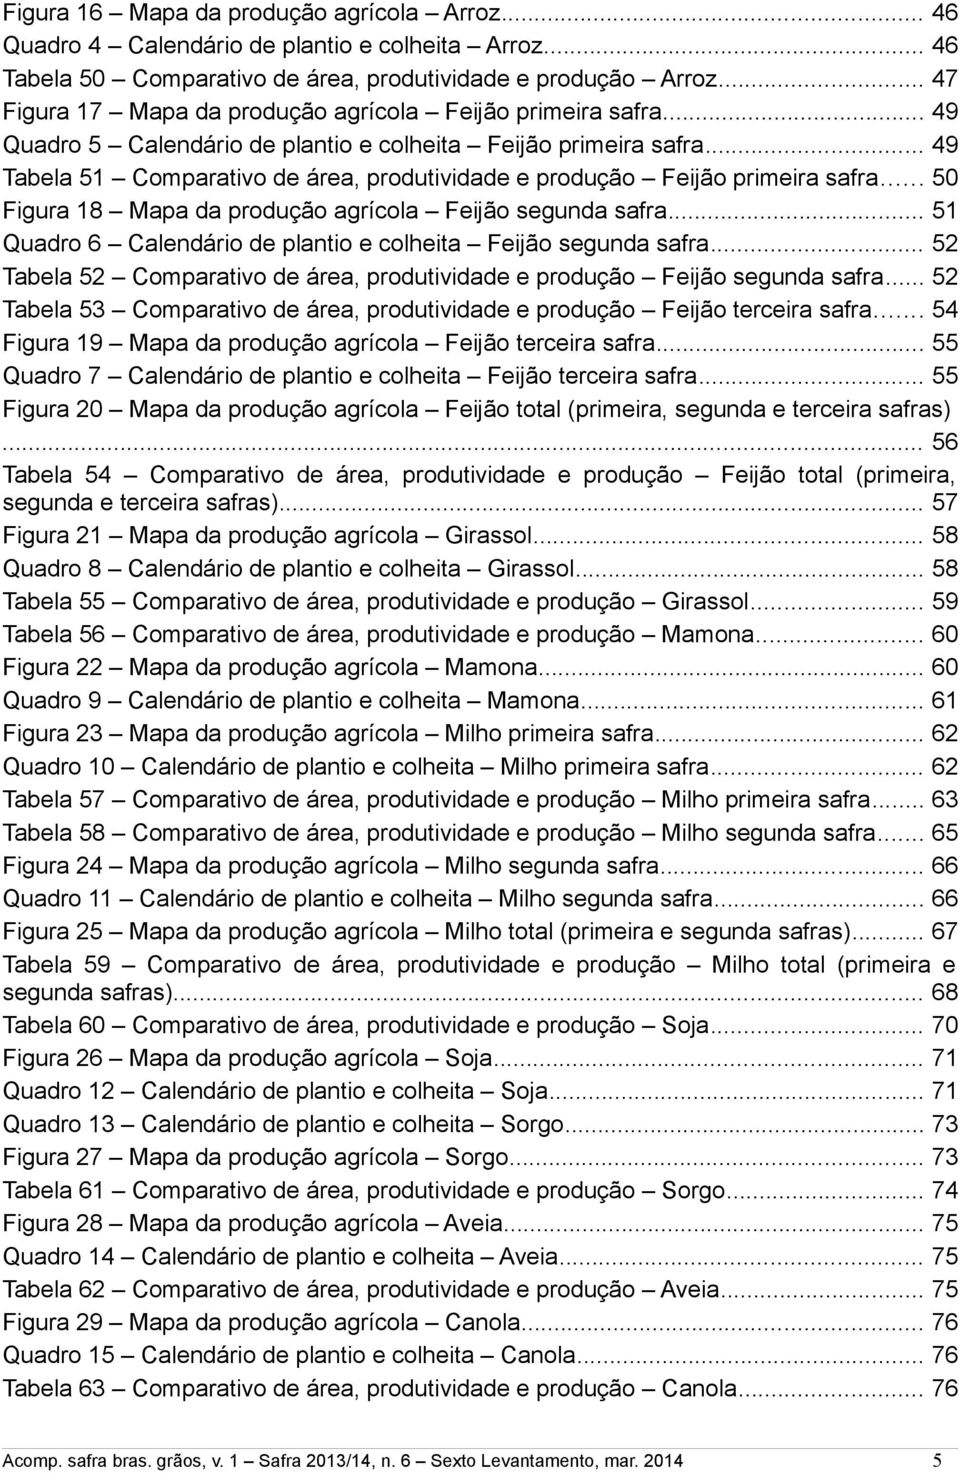 .. 49 Tabela 51 omparativo de área, produtividade e produção Feijão primeira safra... 50 Figura 18 Mapa da produção agrícola Feijão segunda safra.